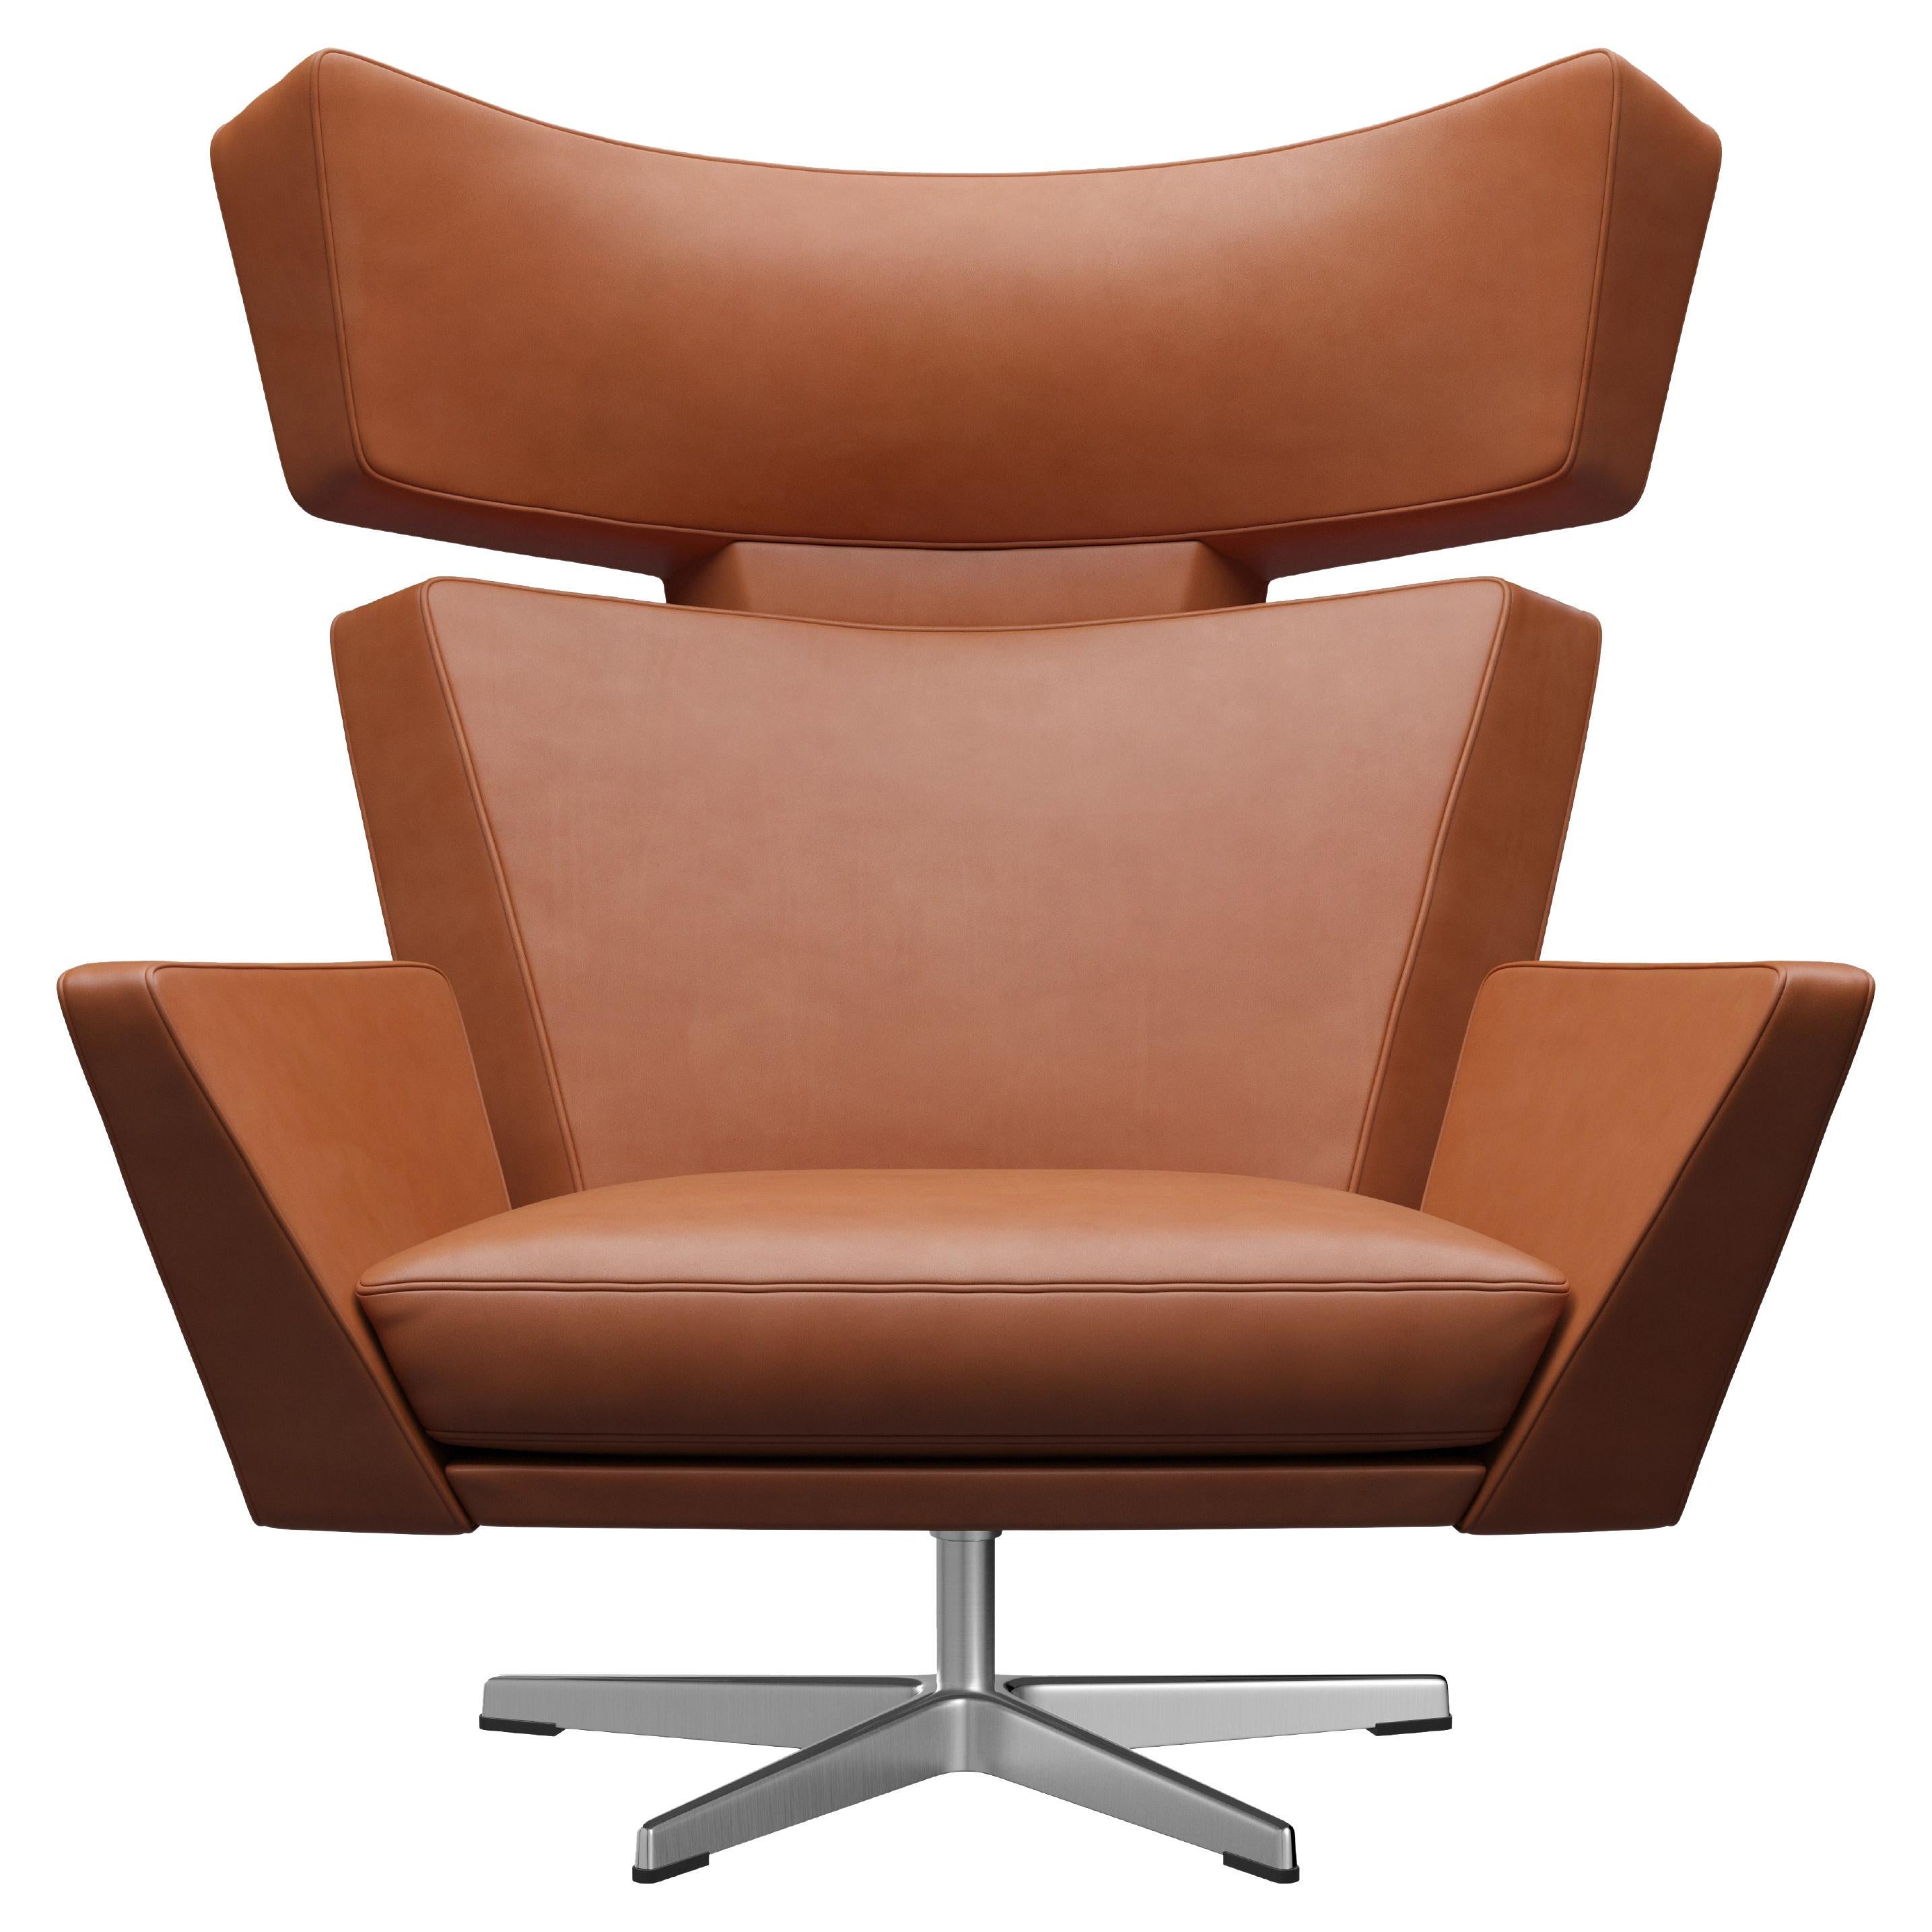 Arne Jacobsen 'Oksen' Chair for Fritz Hansen in Grace Leather Upholstery